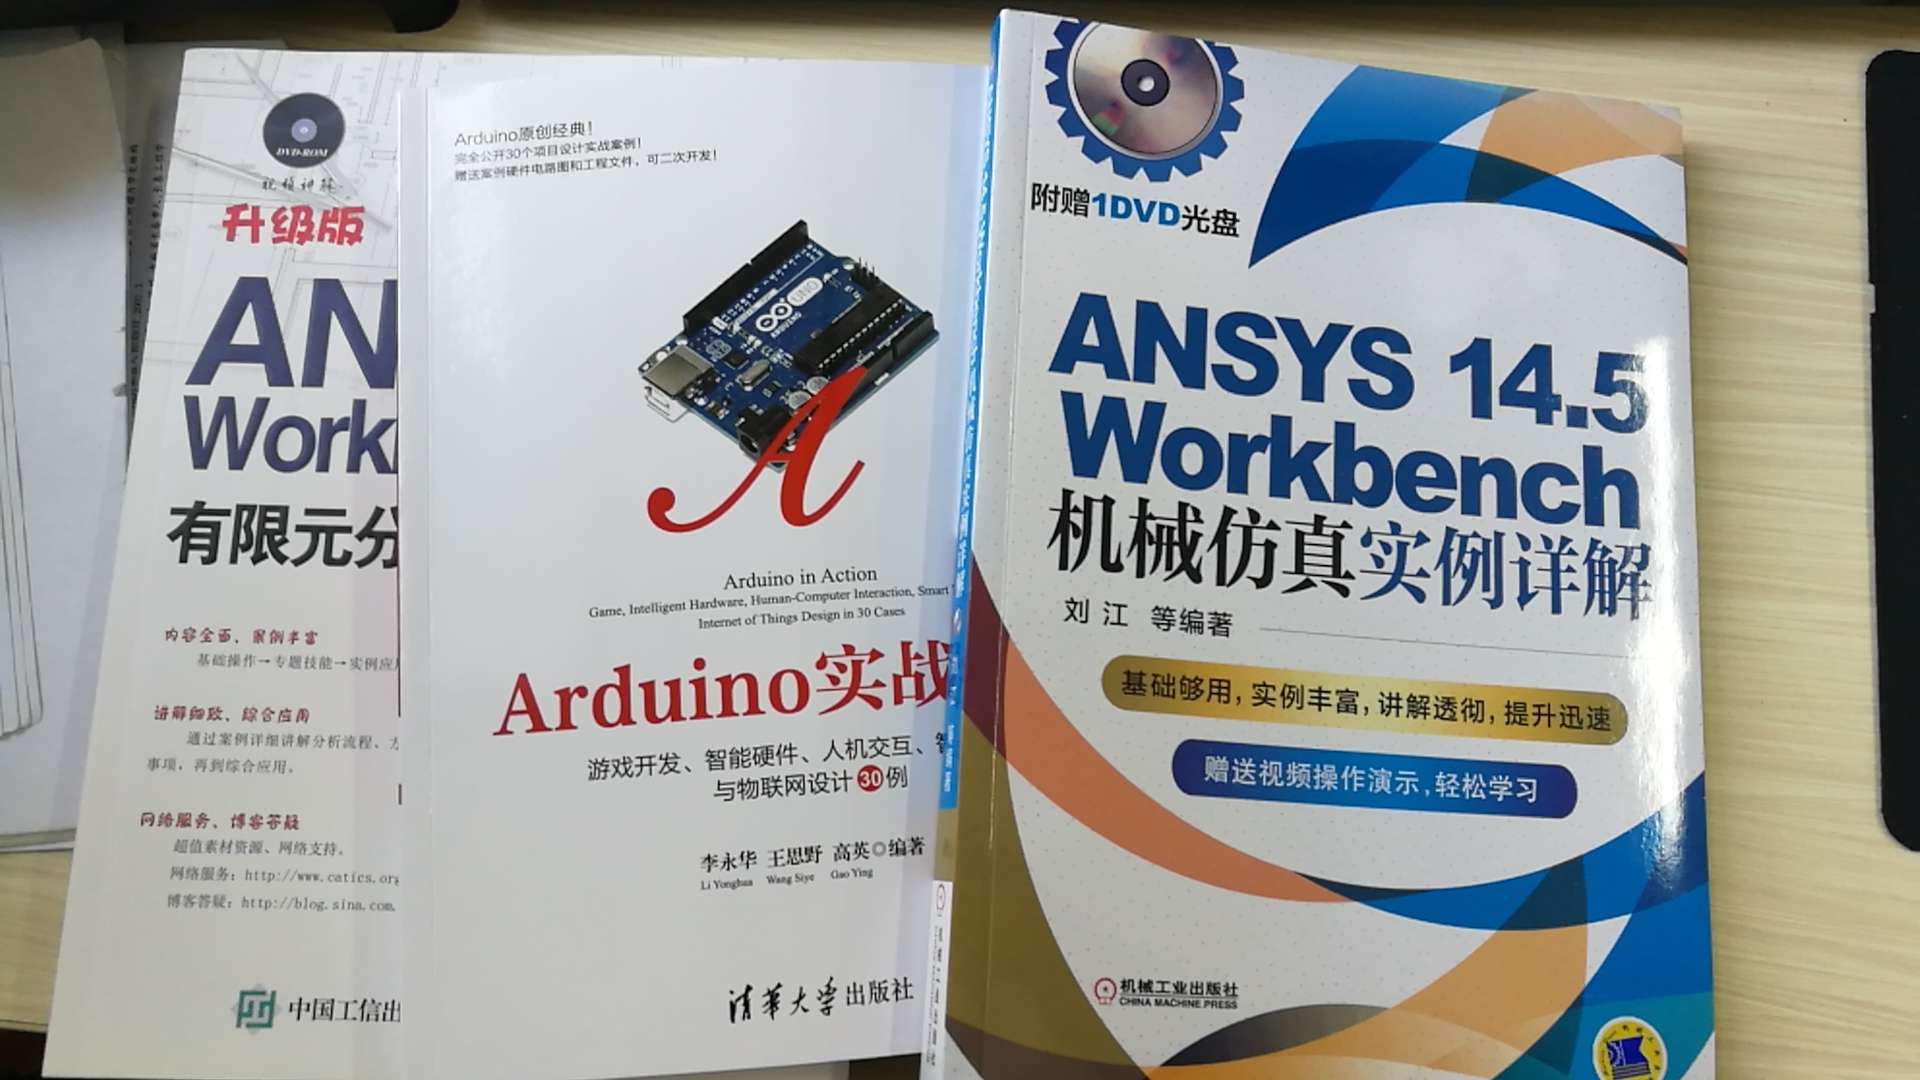 今天才有机会仔仔细细的看，这本书问题很多，例程印错的不少，会让初学者走弯路。关于库的使用，说的很含糊，初学者看的话，完全看不明白。而库使用方便才是arduino的特色，还是建议多花点钱买?? Arduino权威指南(第2版) 来得好